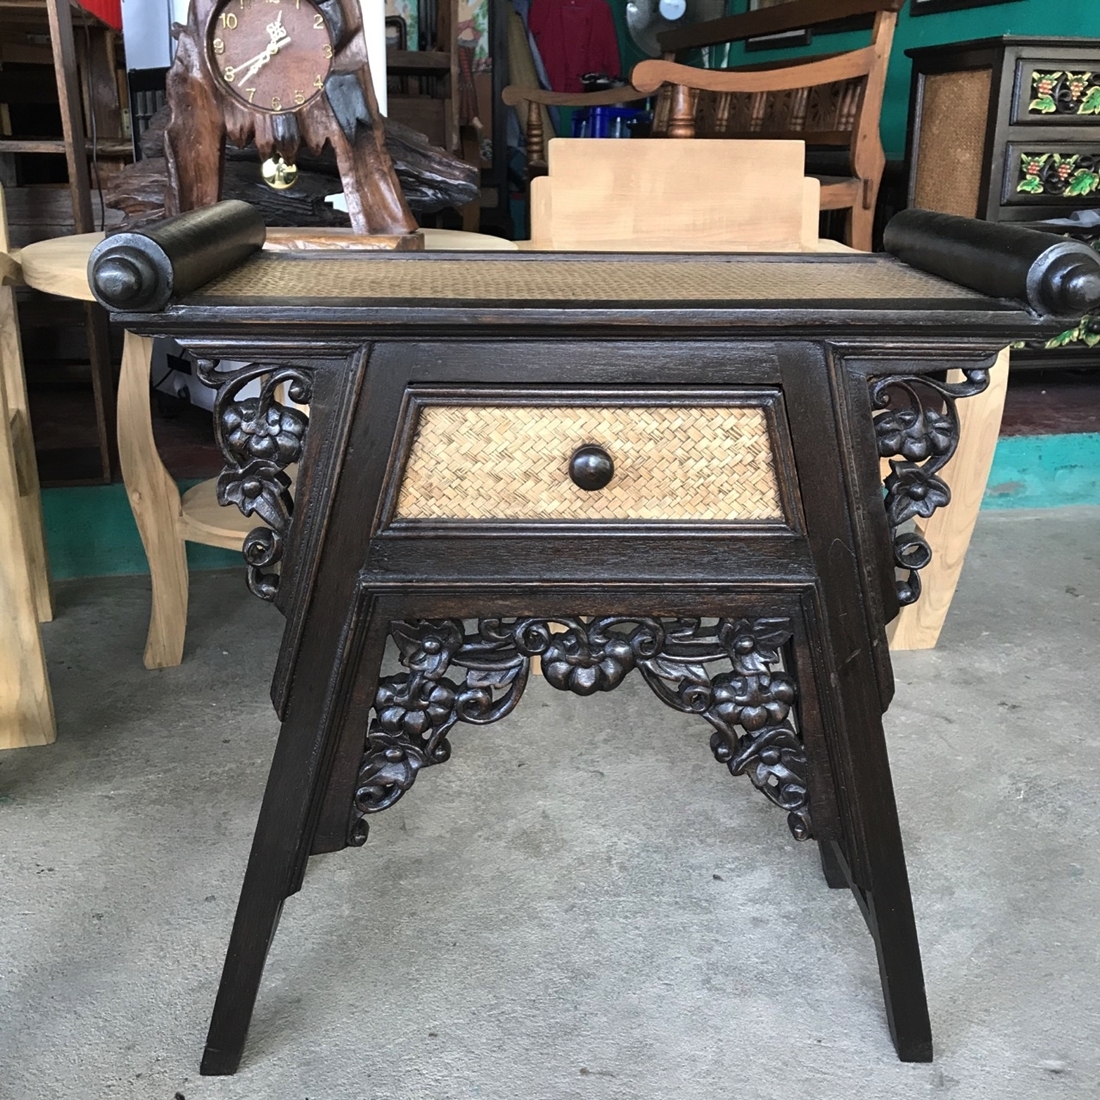 โต๊ะจีนสานเสื่อ ลายฟักทอง มีลิ้นชัก Chinese bamboo table  ขนาด 34x62x64cm